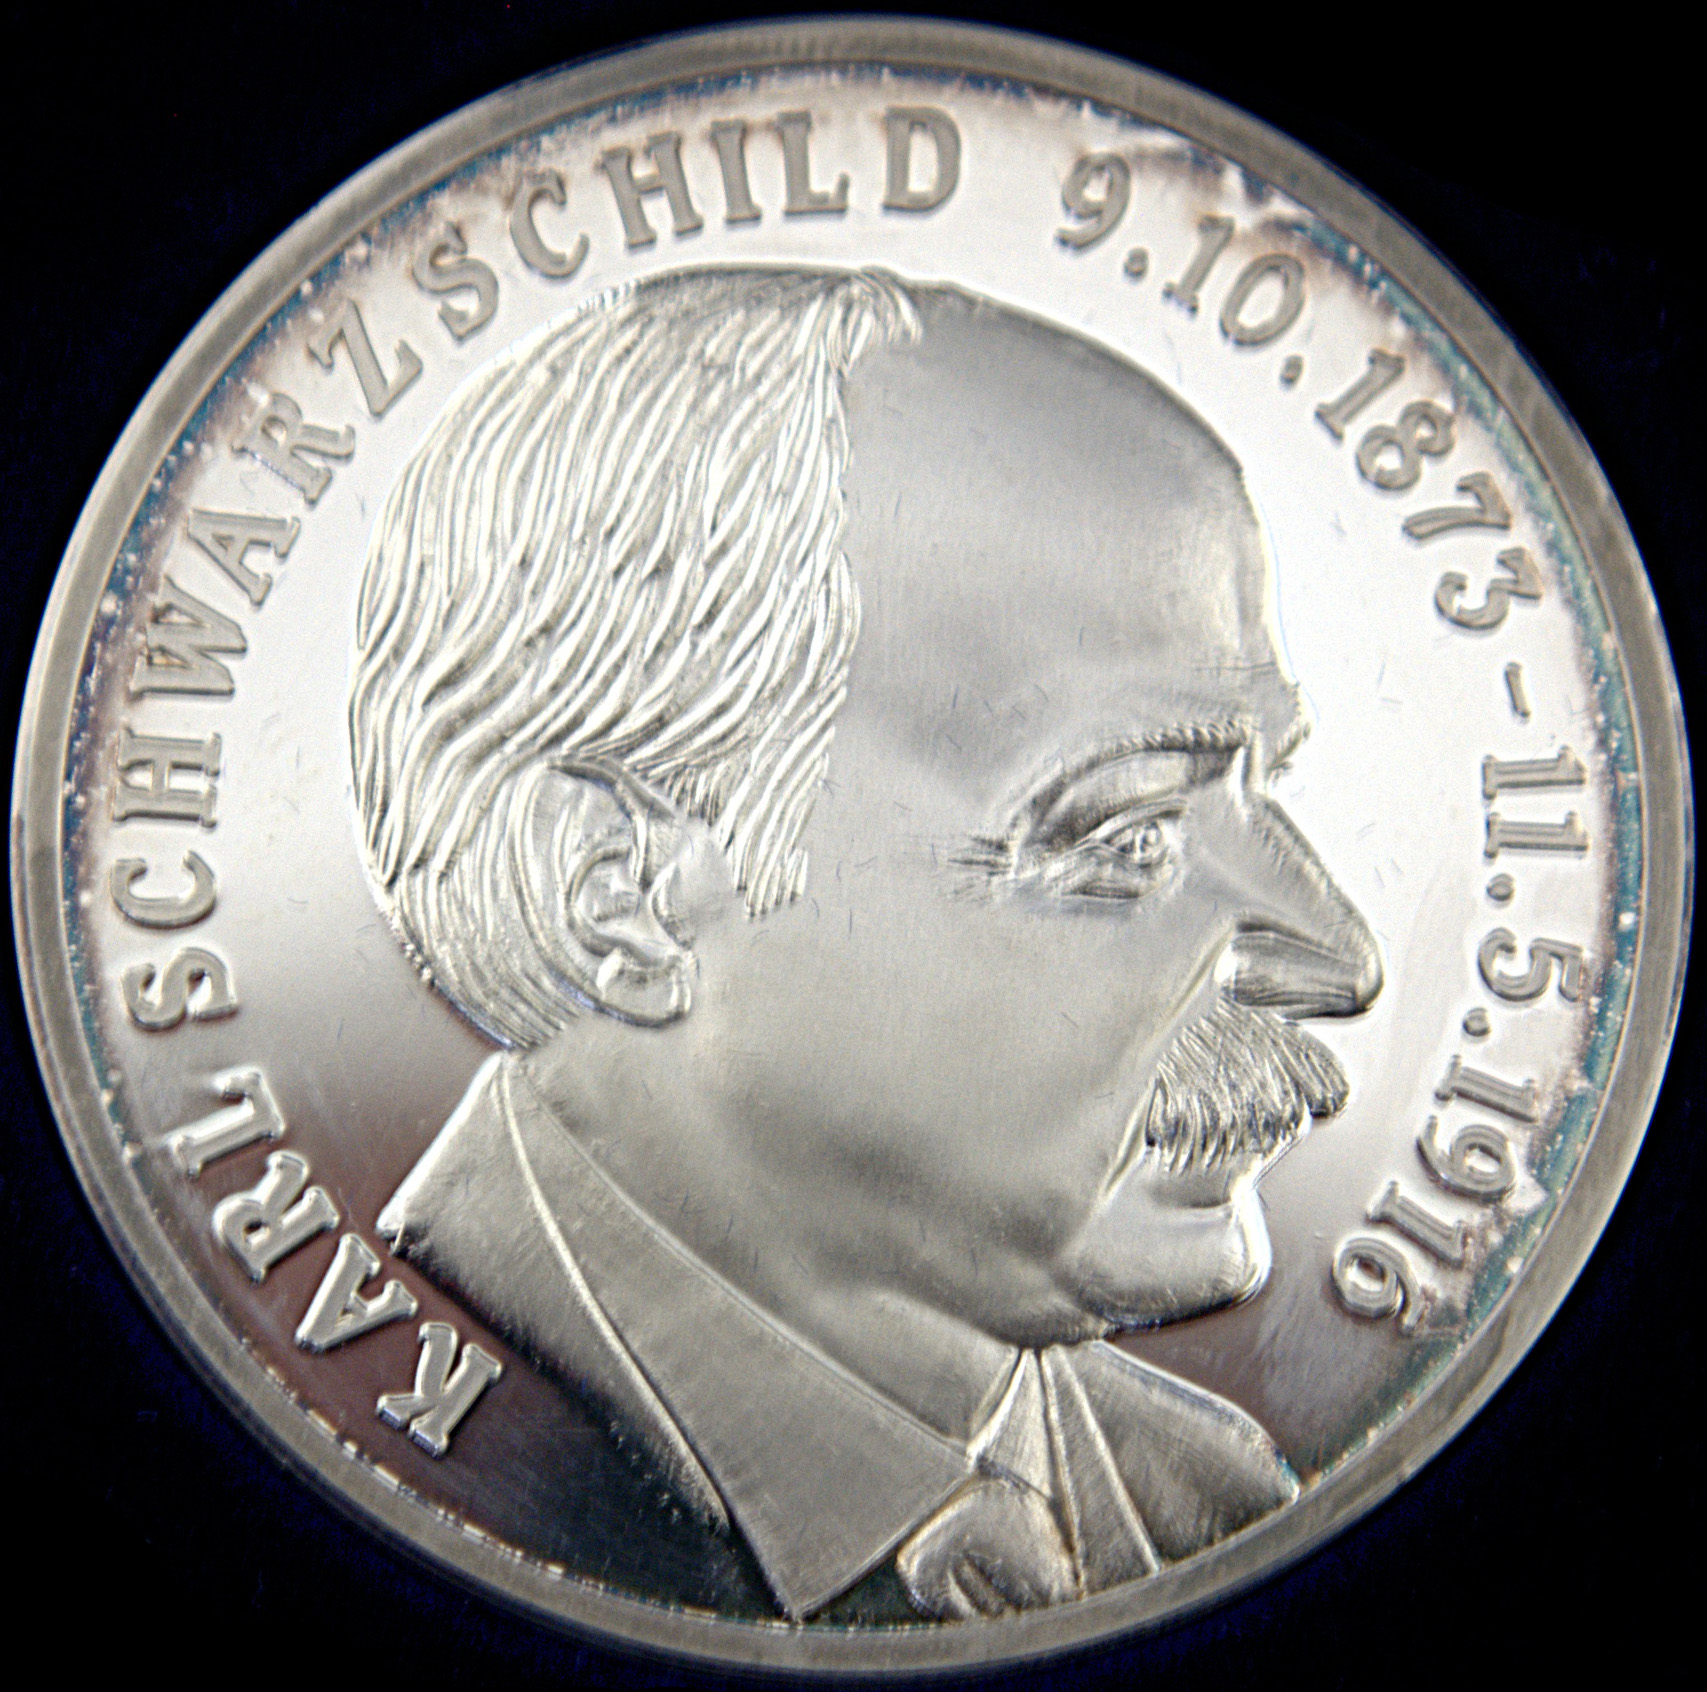 Schwarzschild-Medaille.jpg